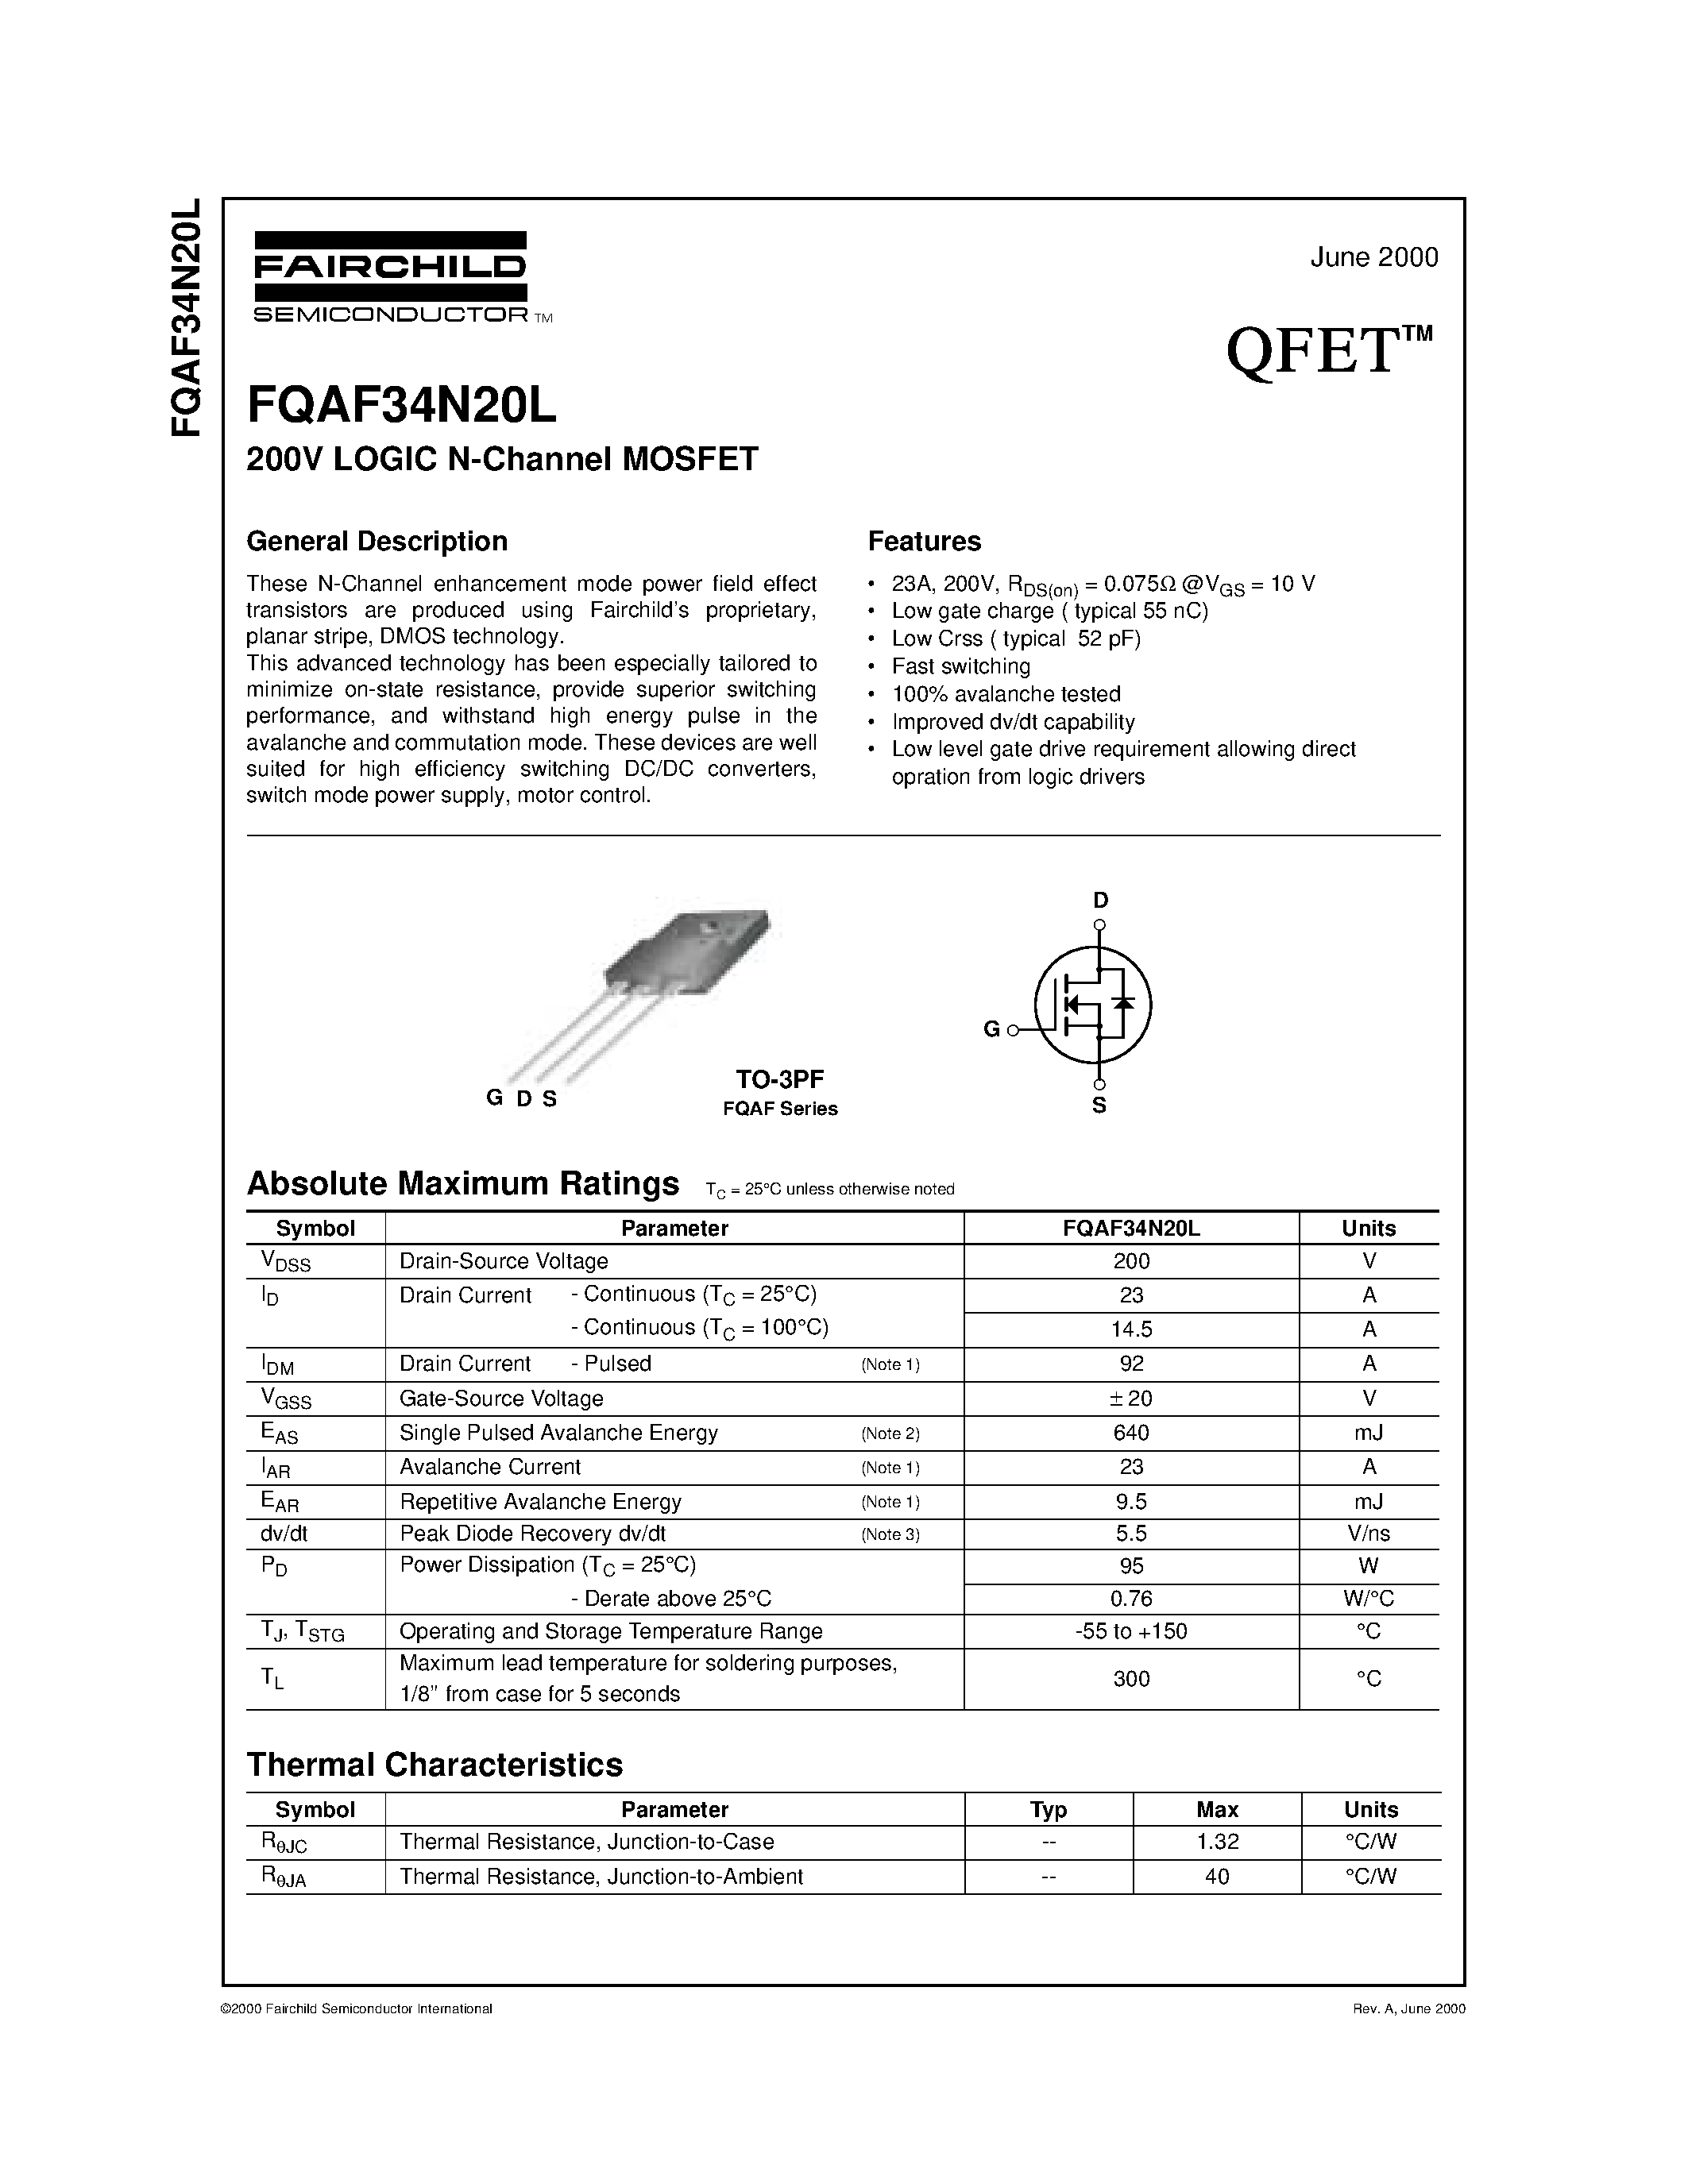 Datasheet FQAF34N20L - 200V LOGIC N-Channel MOSFET page 1